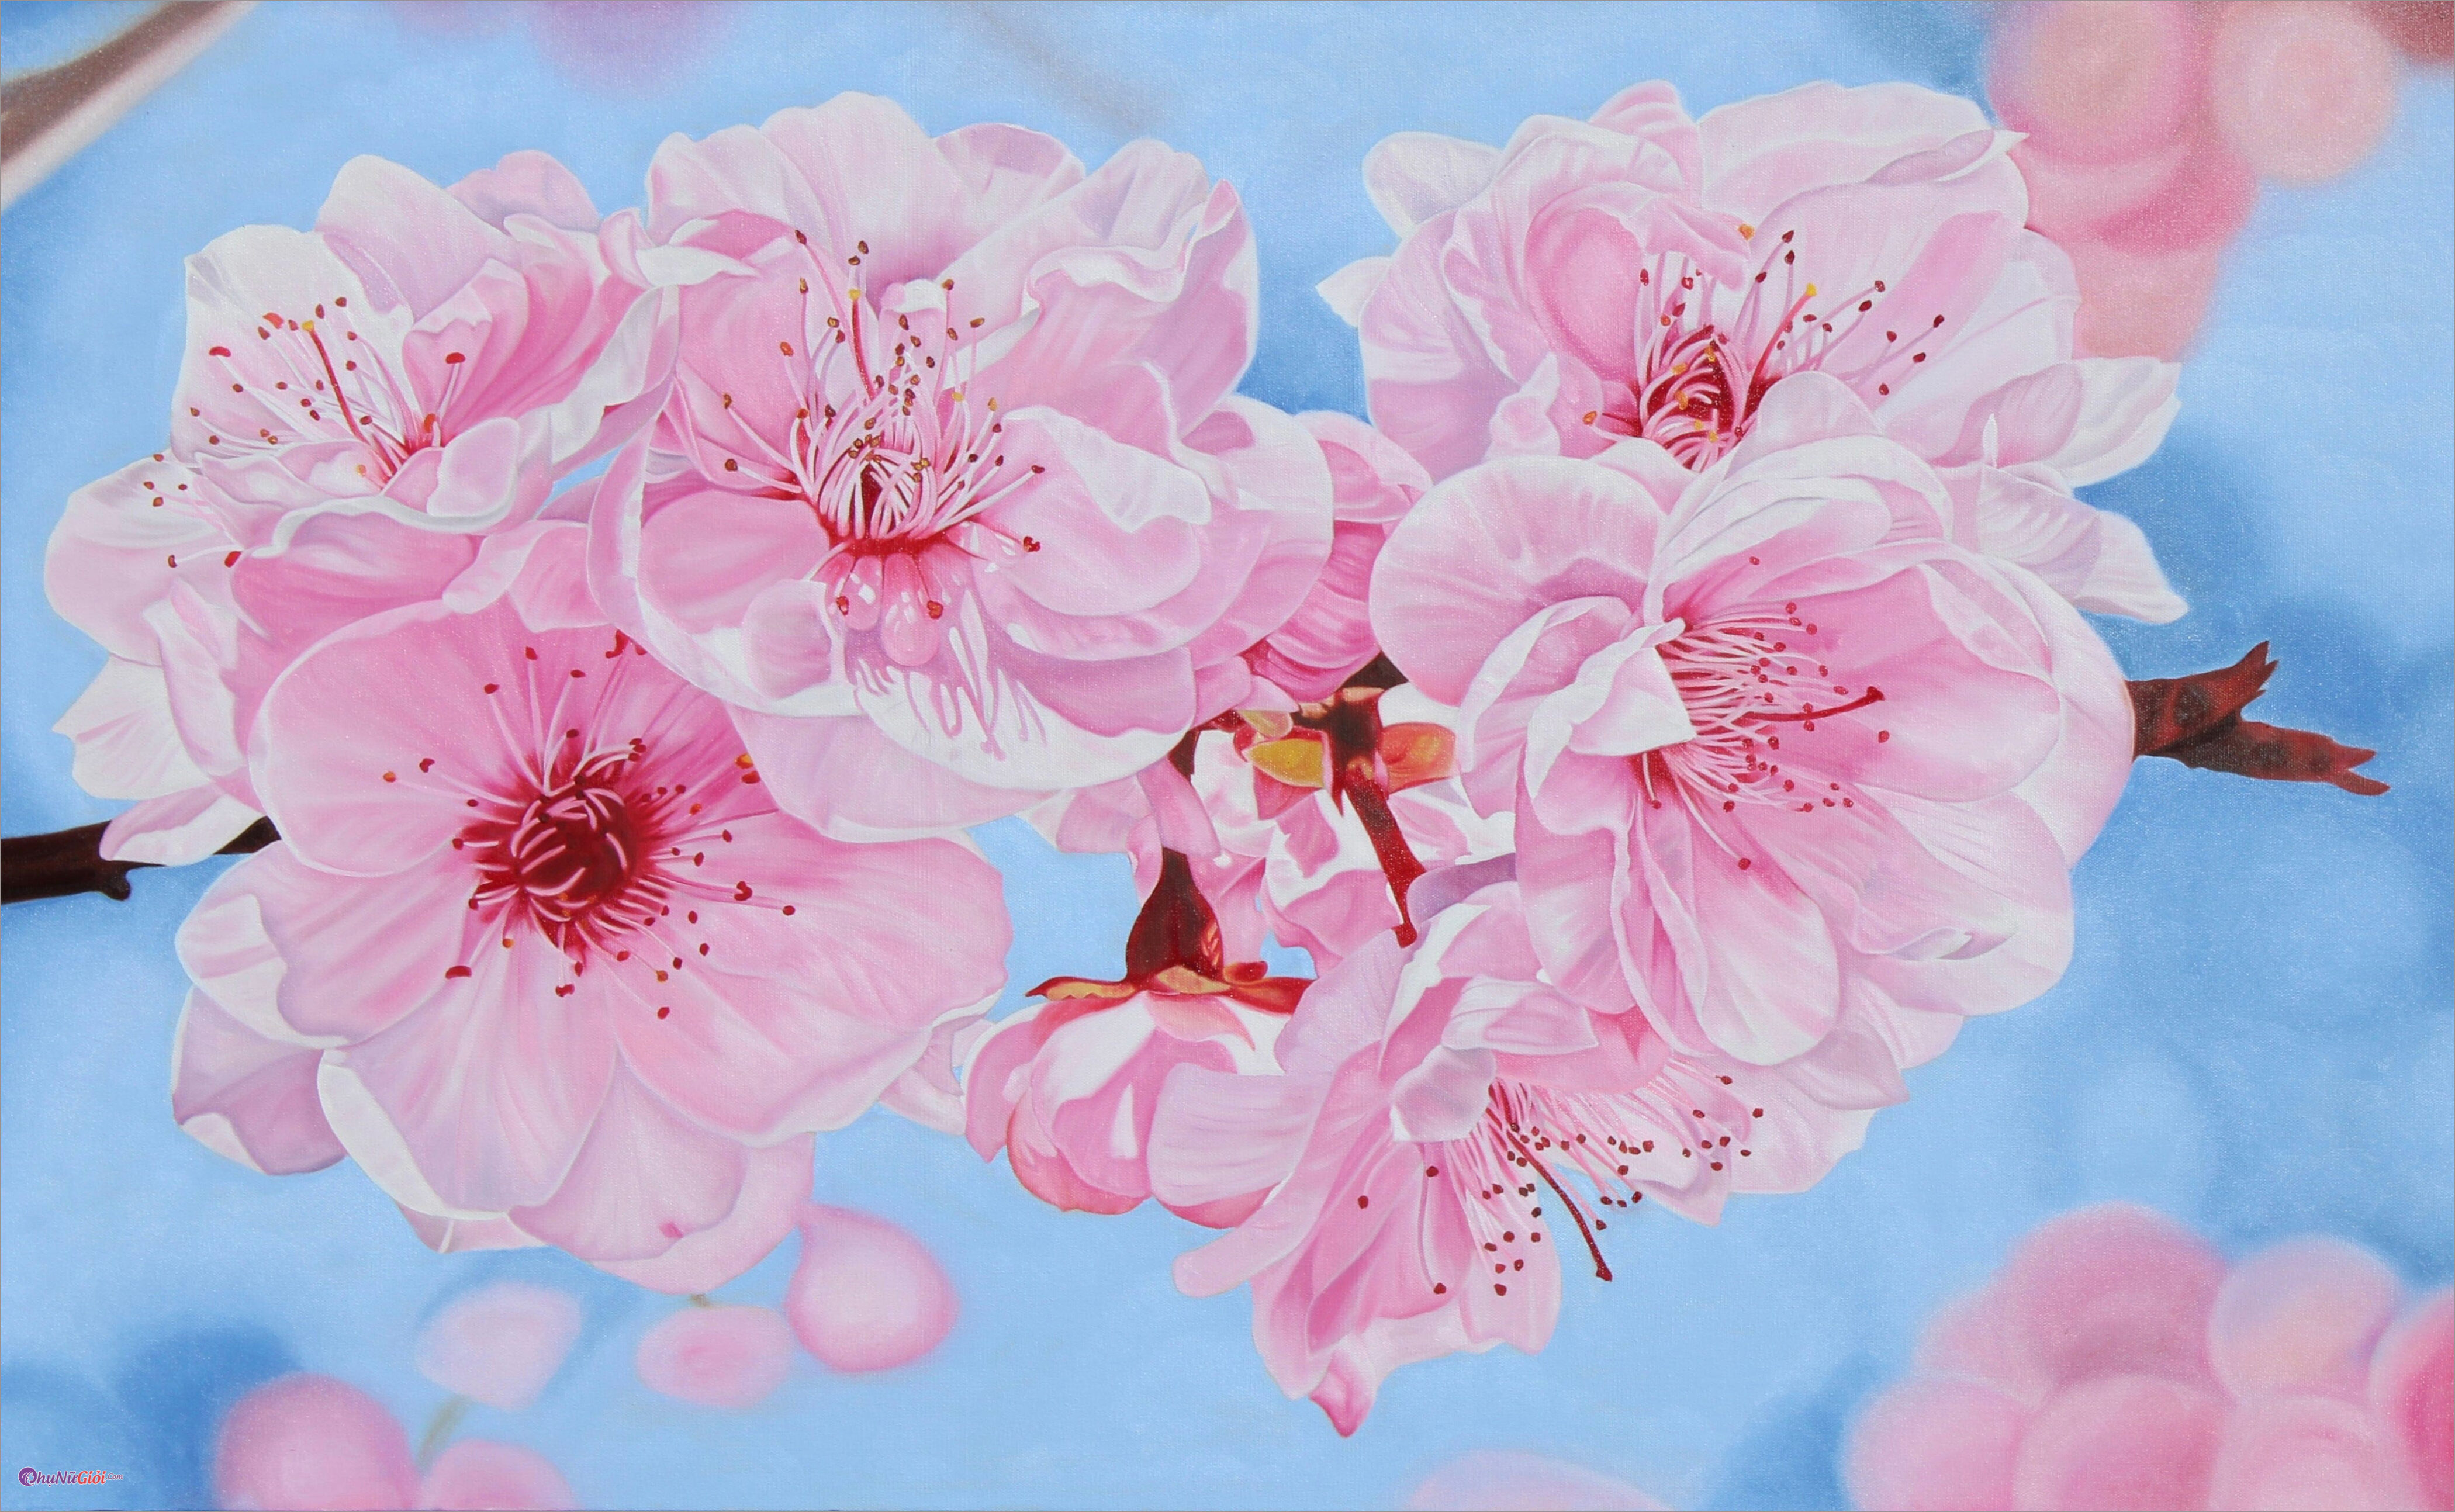 Hoa anh đào - Với sắc hồng nhẹ nhàng và dễ chịu, hoa anh đào thật sự rất đẹp trong mùa xuân. Bức ảnh hoa anh đào được chụp bởi những nhiếp ảnh gia tài ba thường đem lại cảm giác yên bình và thư thái, cho bạn ngắm nhìn hoa đong đầy trên cành.